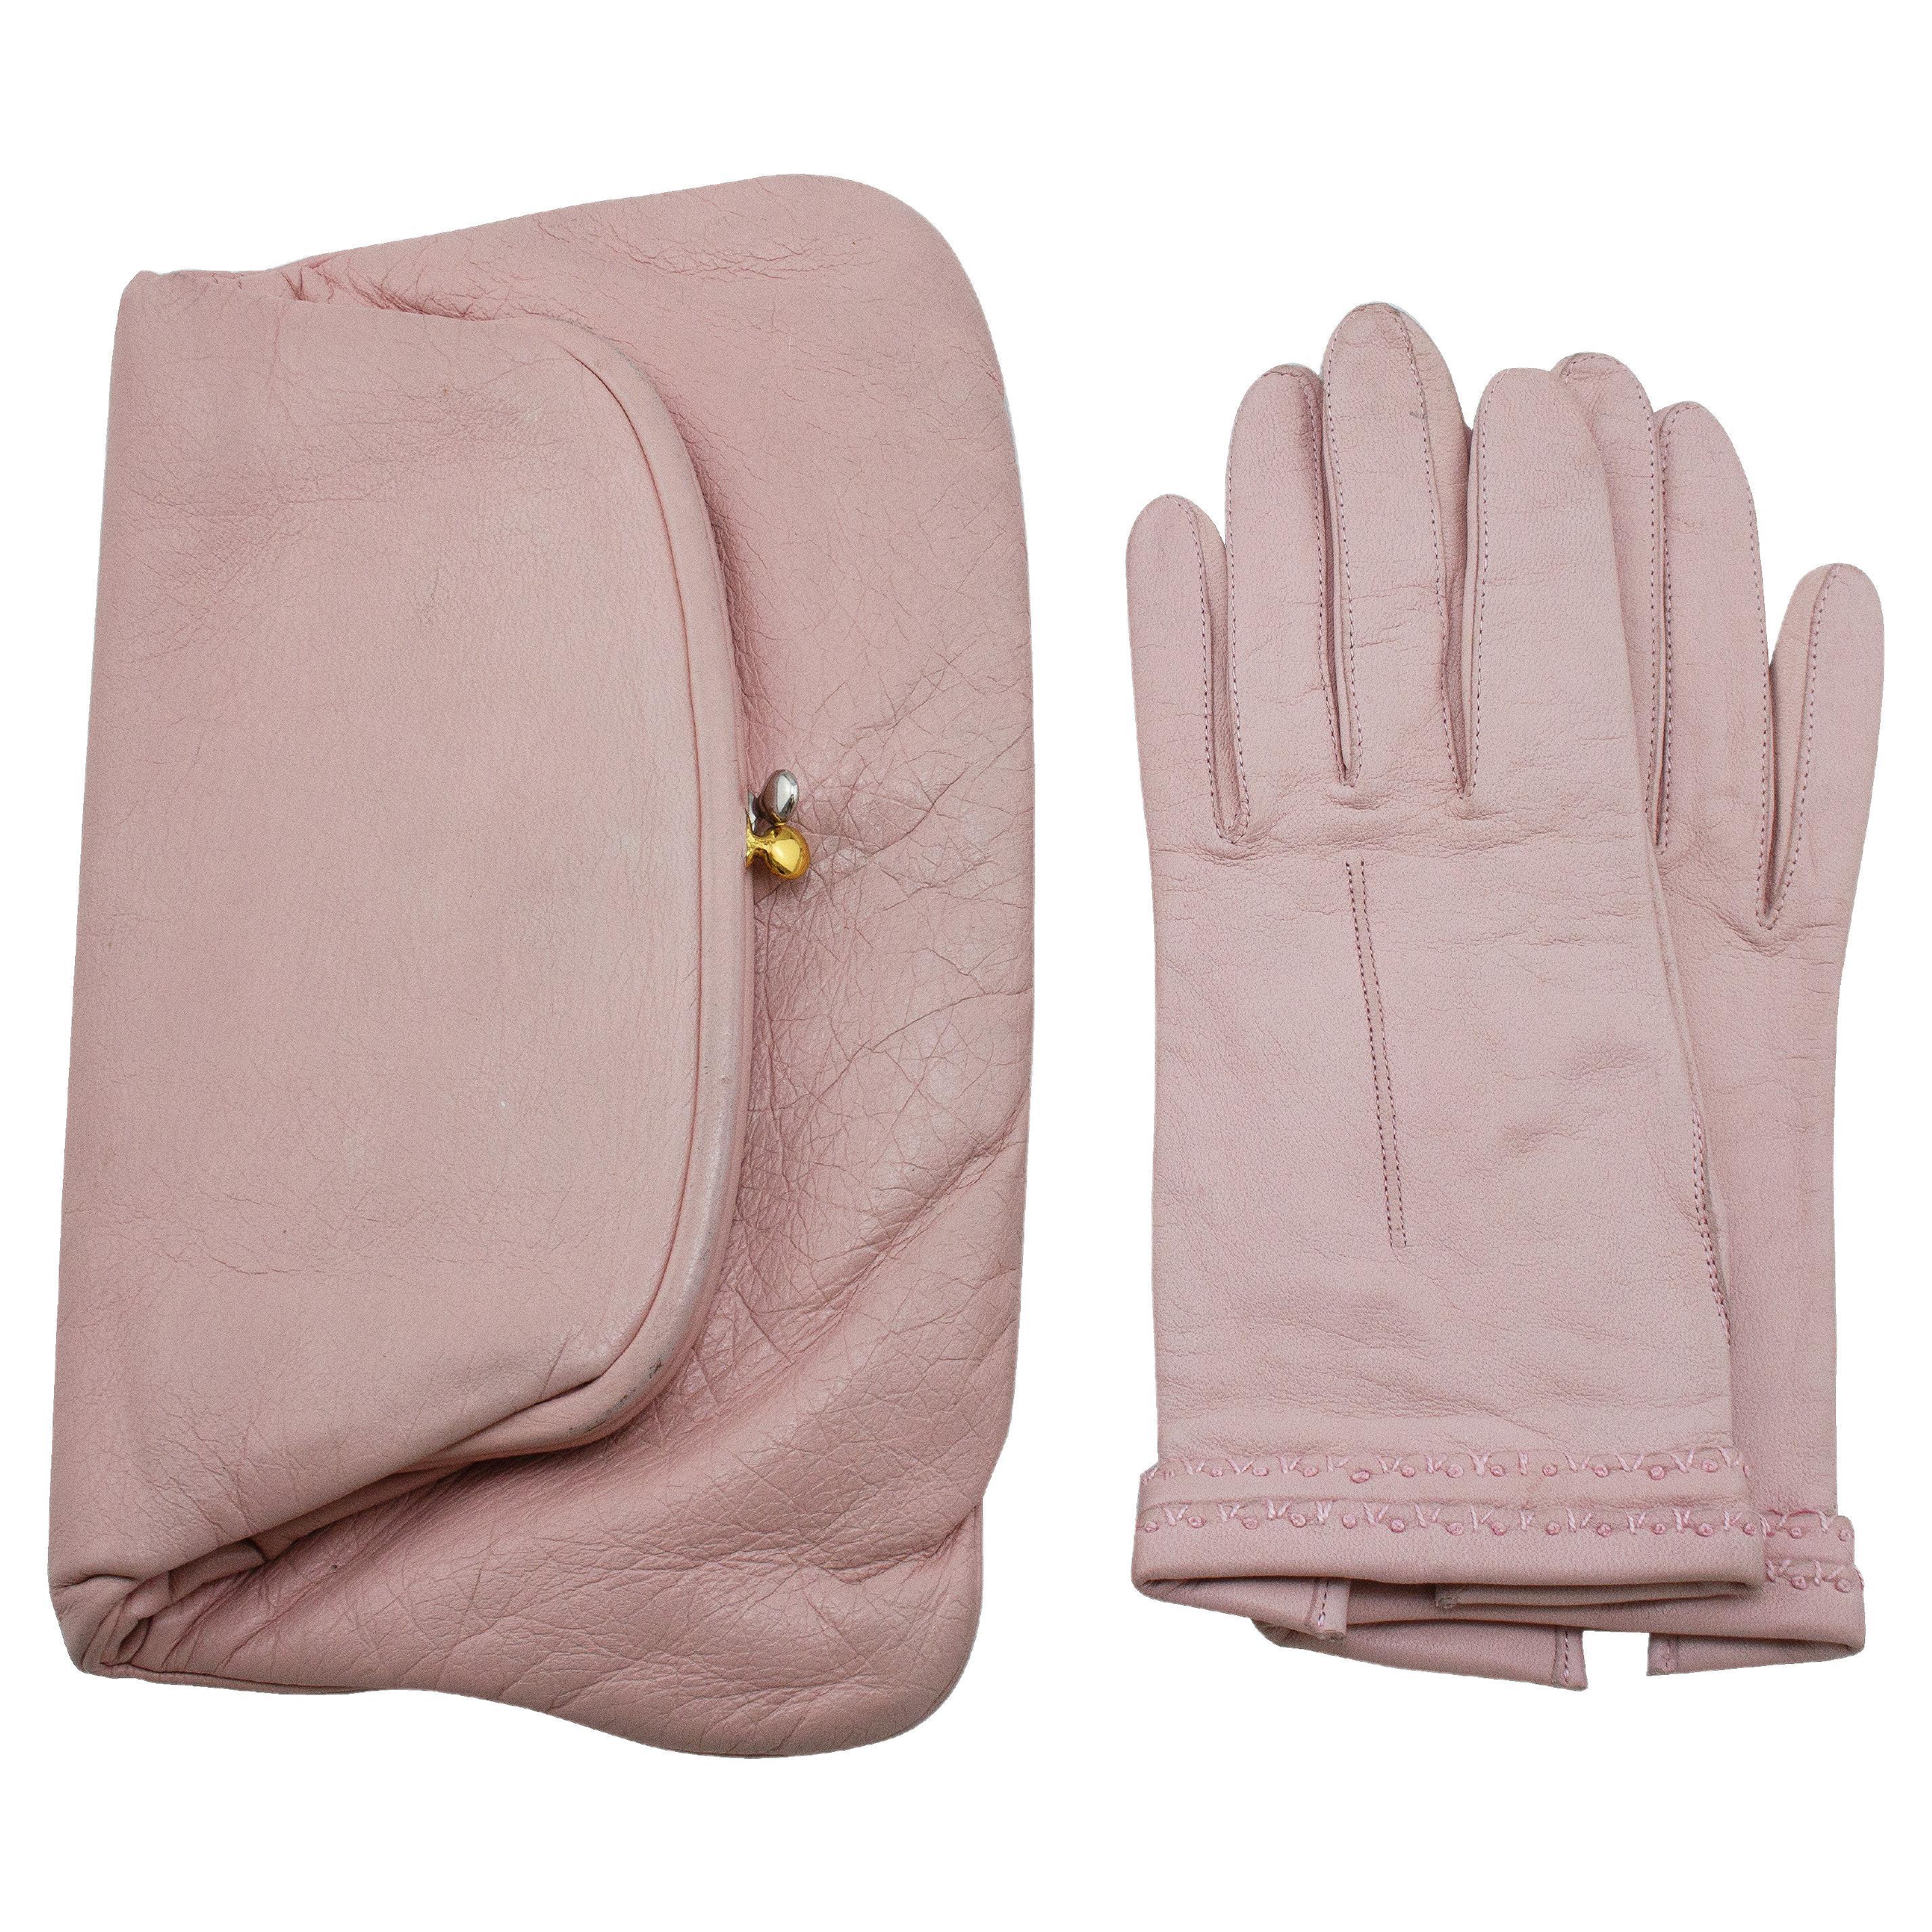 Pochette en cuir rose Coblentz des années 1950 avec gants de chevreau assortis